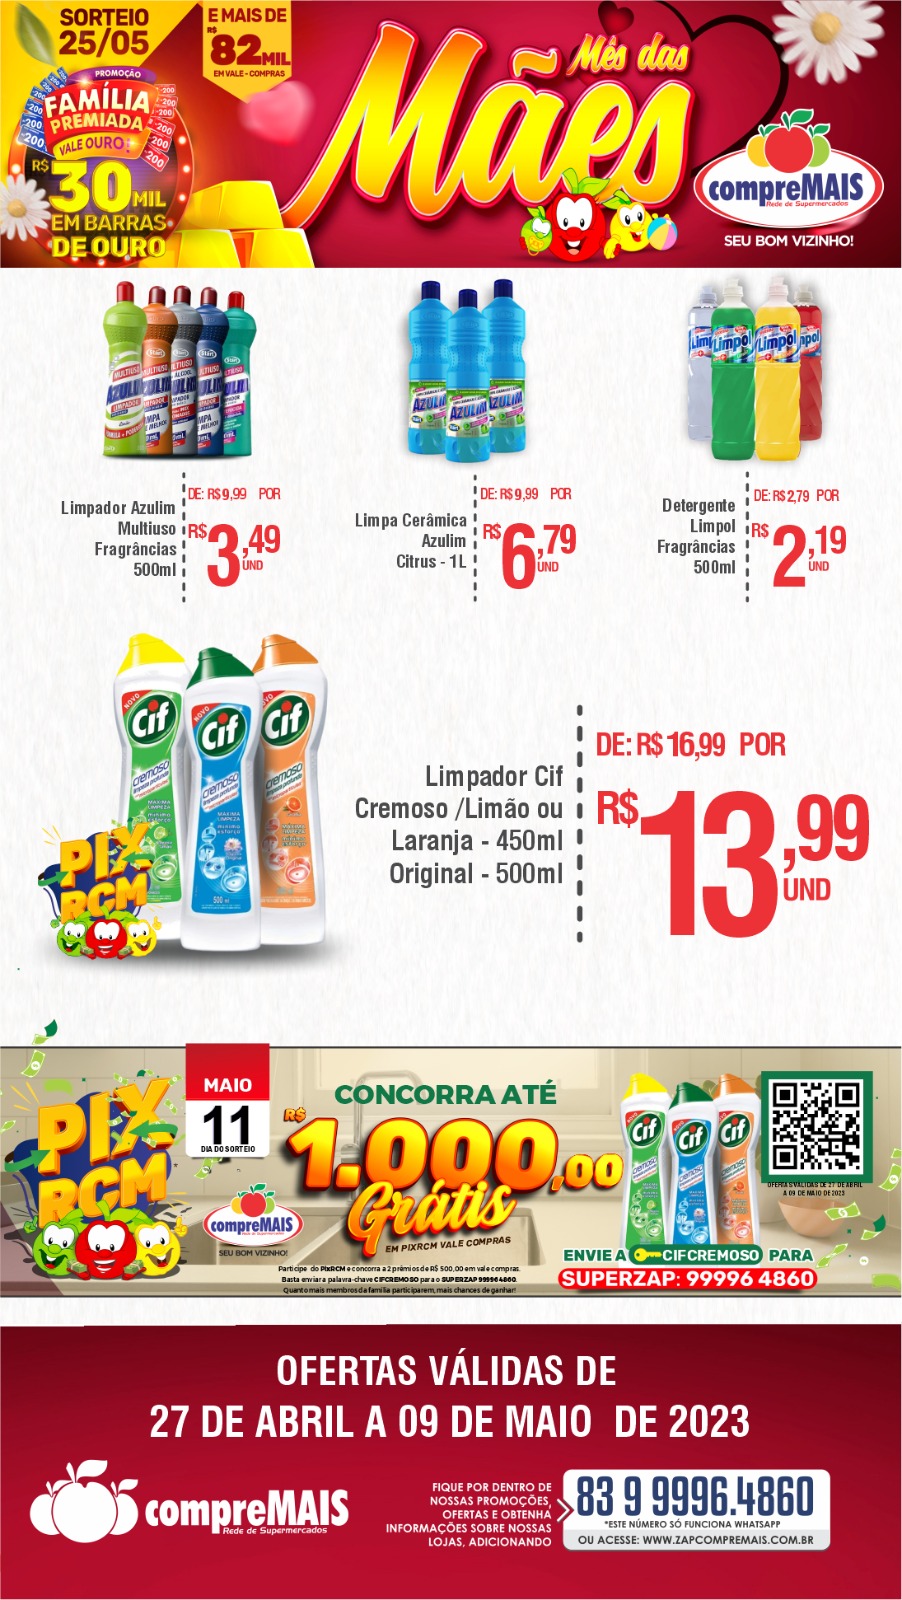 IMG-20230501-WA0019 Confira as ofertas do Malves Supermercados em Monteiro